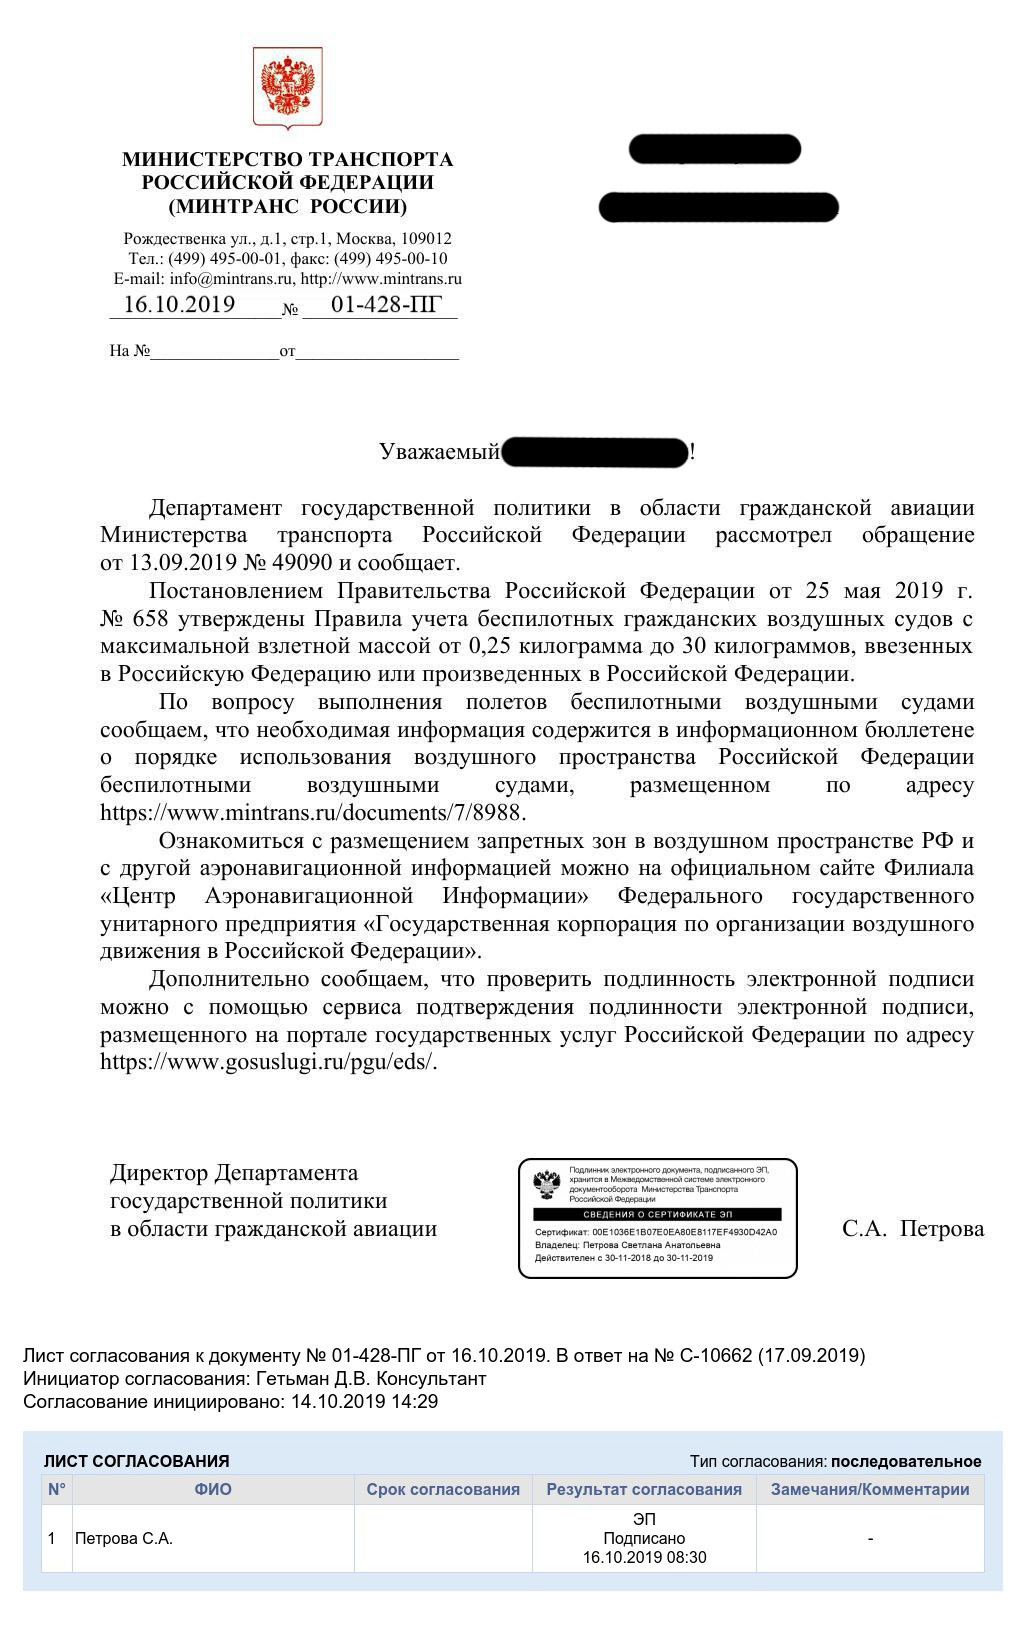 Закон о квадрокоптерах в РФ 2022. Нужно ли регистрировать квадрокоптер? 150 вместо 250 грамм